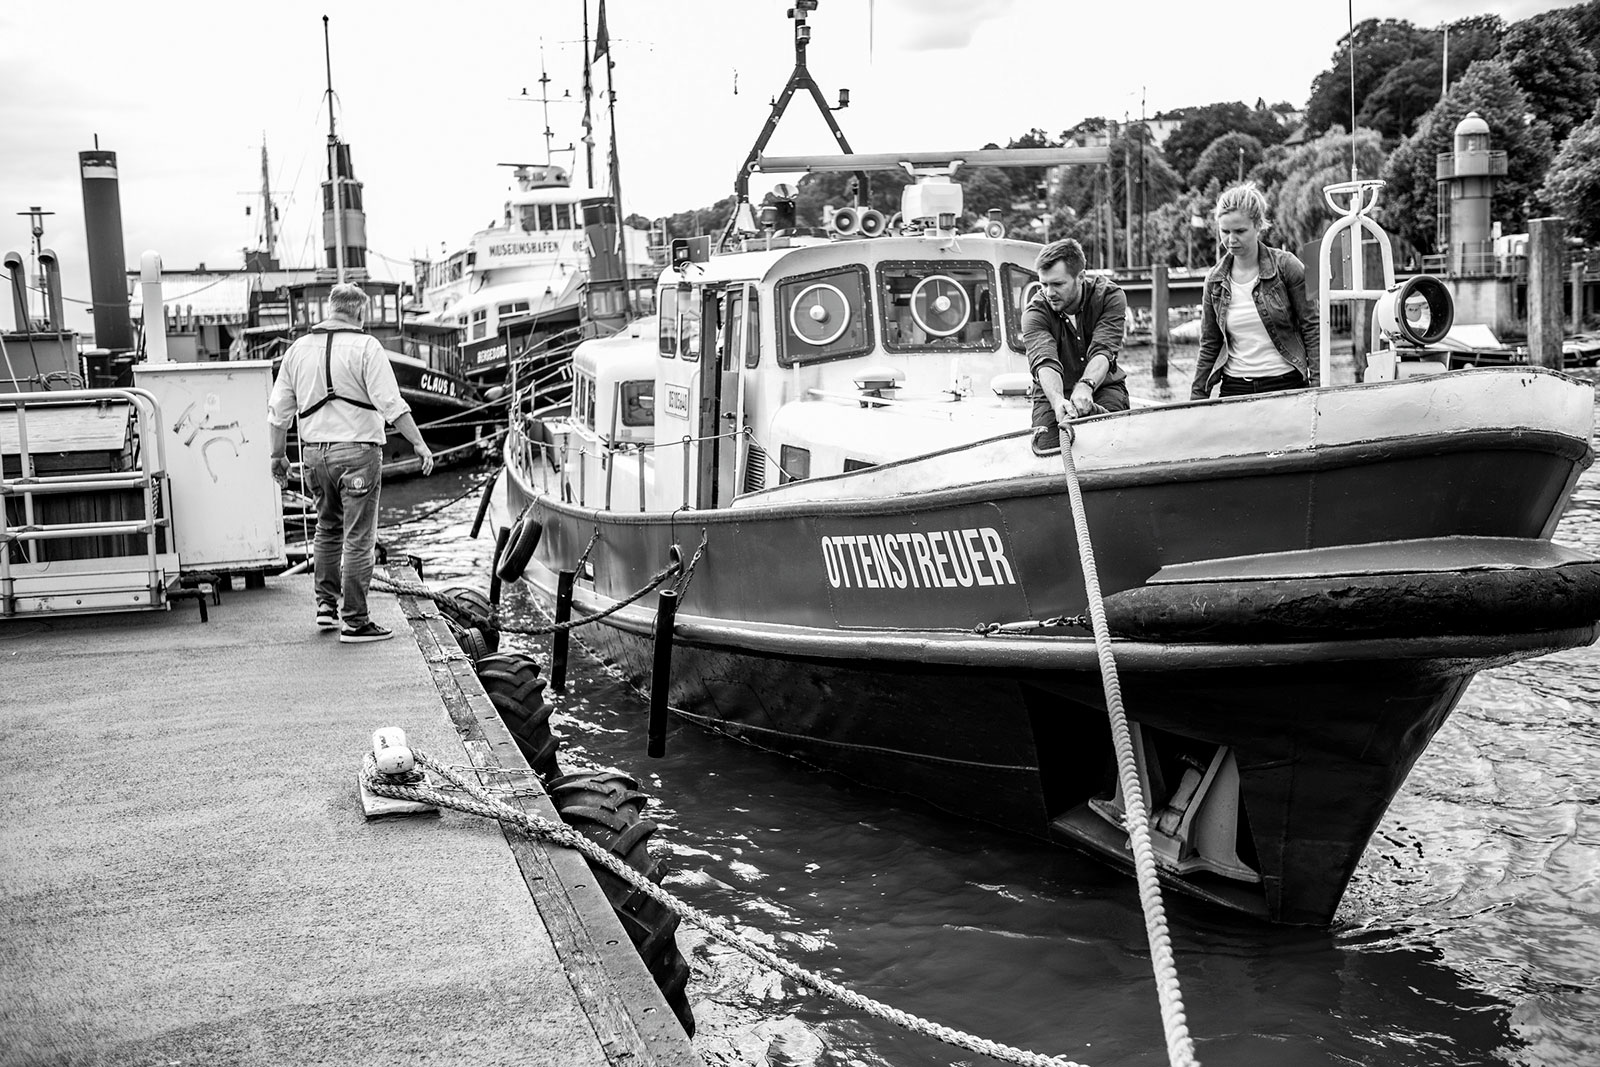 OTTENSTREUER – Polizeiboot von 1958